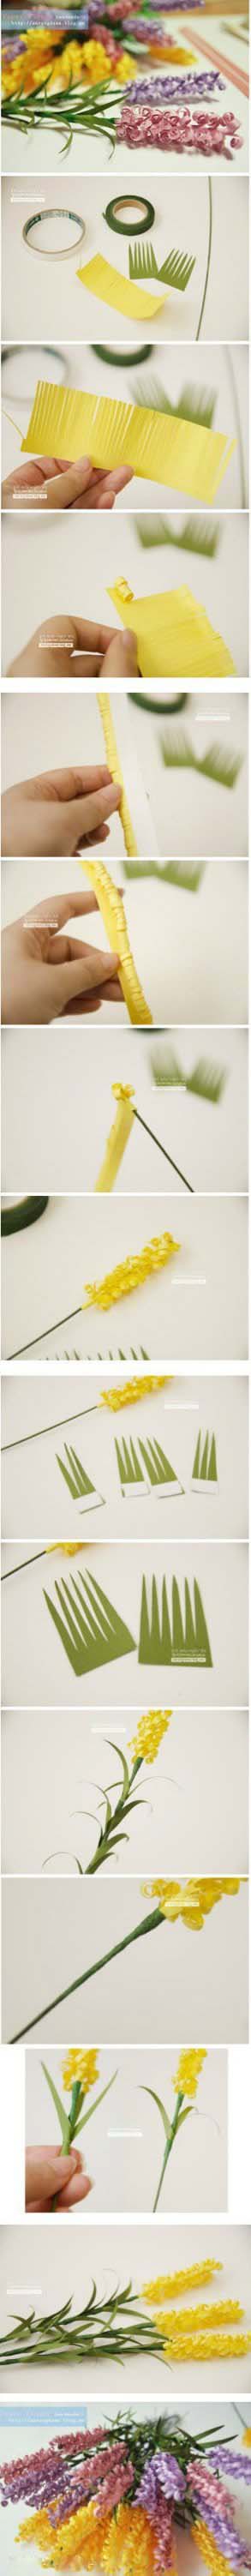 儿童折纸漂亮的花束制作方法图解教程-www.qqscb.com